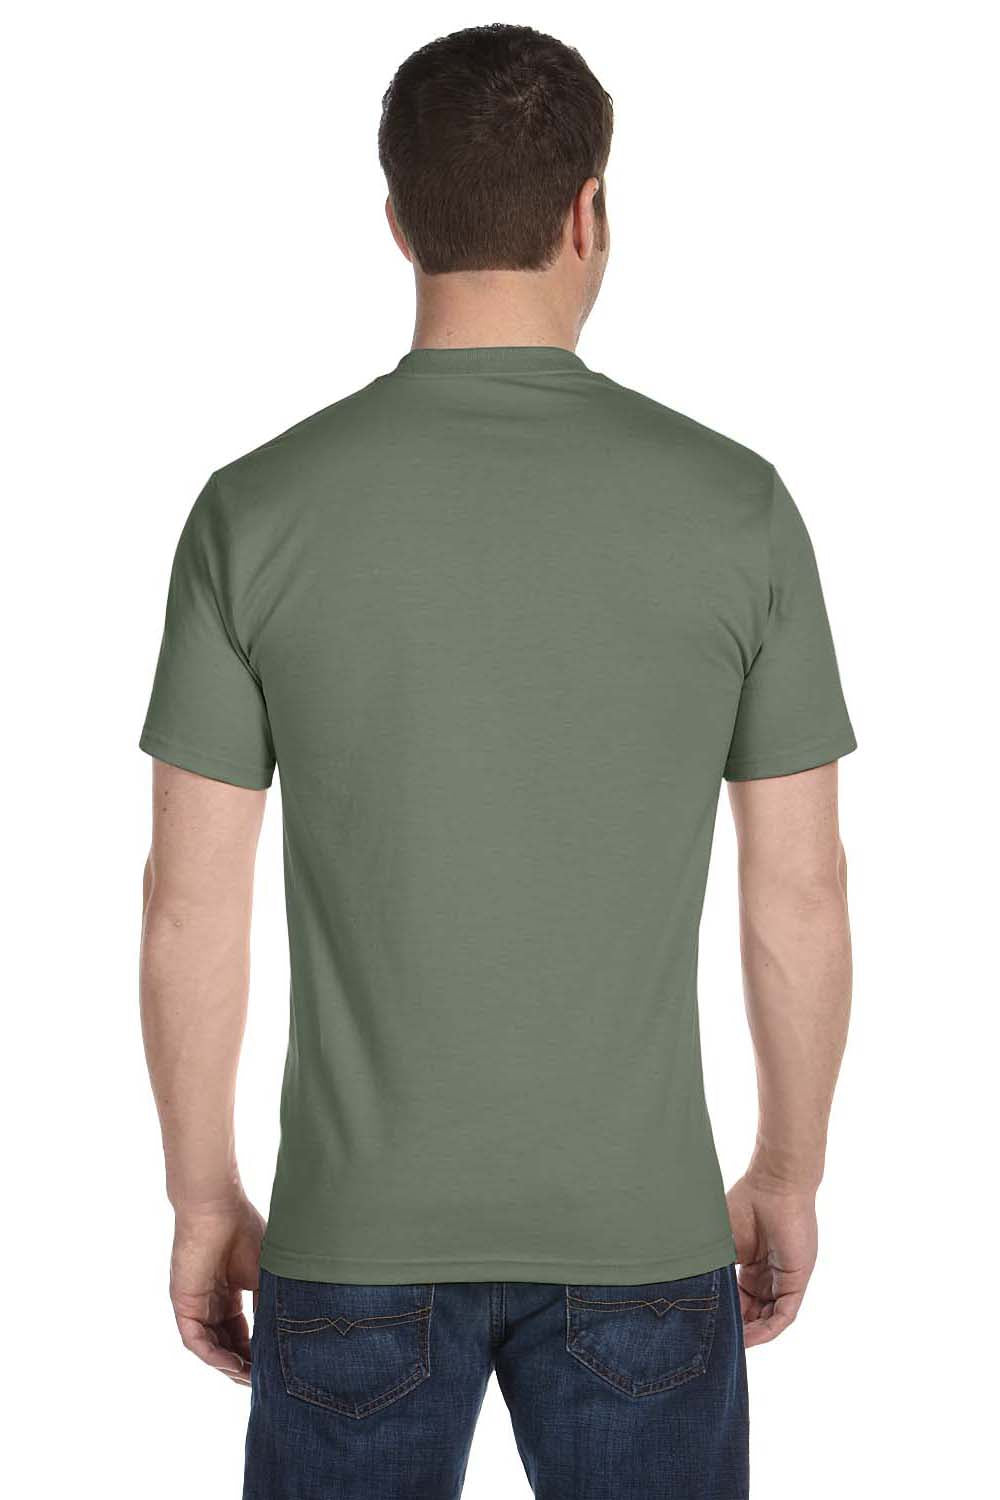 Hanes 5180 Mens Beefy-T Short Sleeve Crewneck T-Shirt Fatigue Green Back